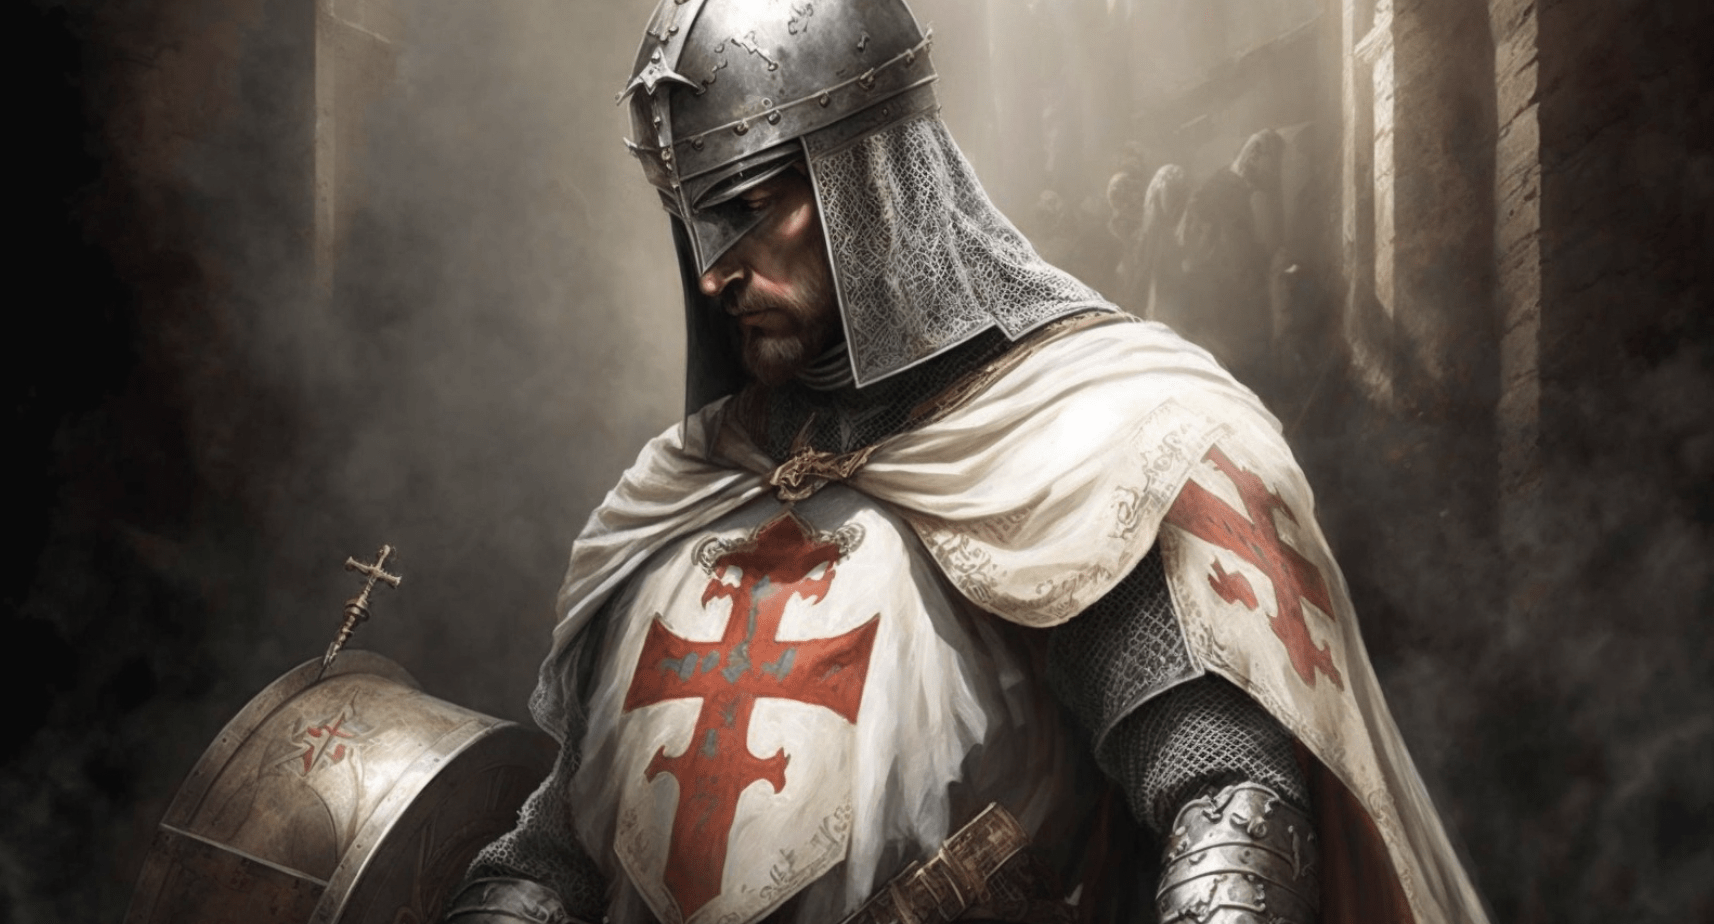 Templar Grand Master Odo de St. Amand